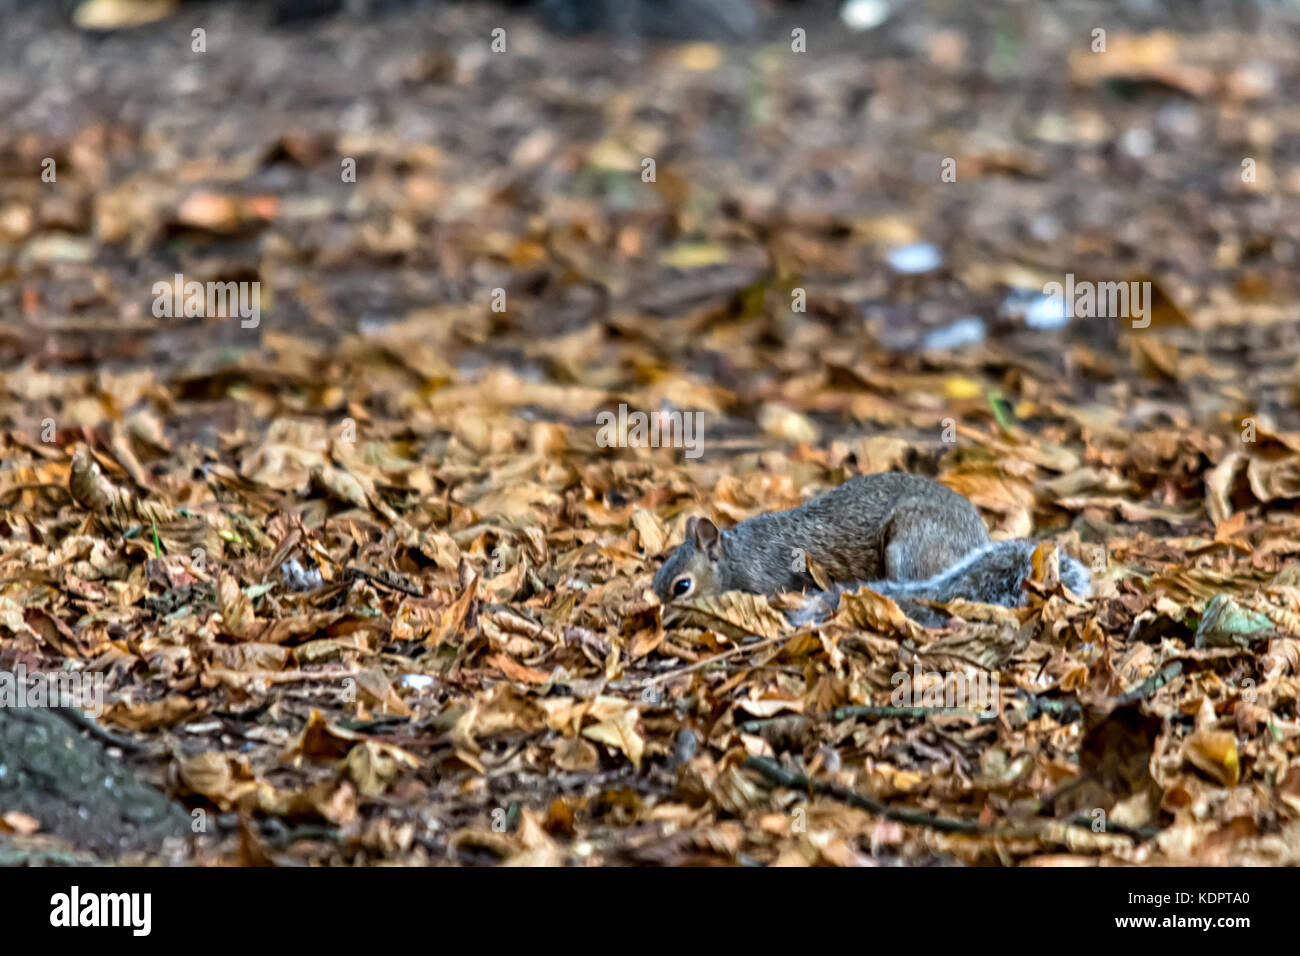 Melton Mowbray, UK. 15 oct, 2017. golden couleurs de l'automne dans le parc local, les écureuils commencer hideing écrous comme préparation pour temps froid lorsque la nourriture est rare, les écureuils récupérer jusqu'à 30  % des noix qu'ils enterrent. l'égarer de tant de glands les graines de la prochaine génération de chênes. photo : clifford norton/Alamy live news crédit : clifford norton/Alamy live news Banque D'Images